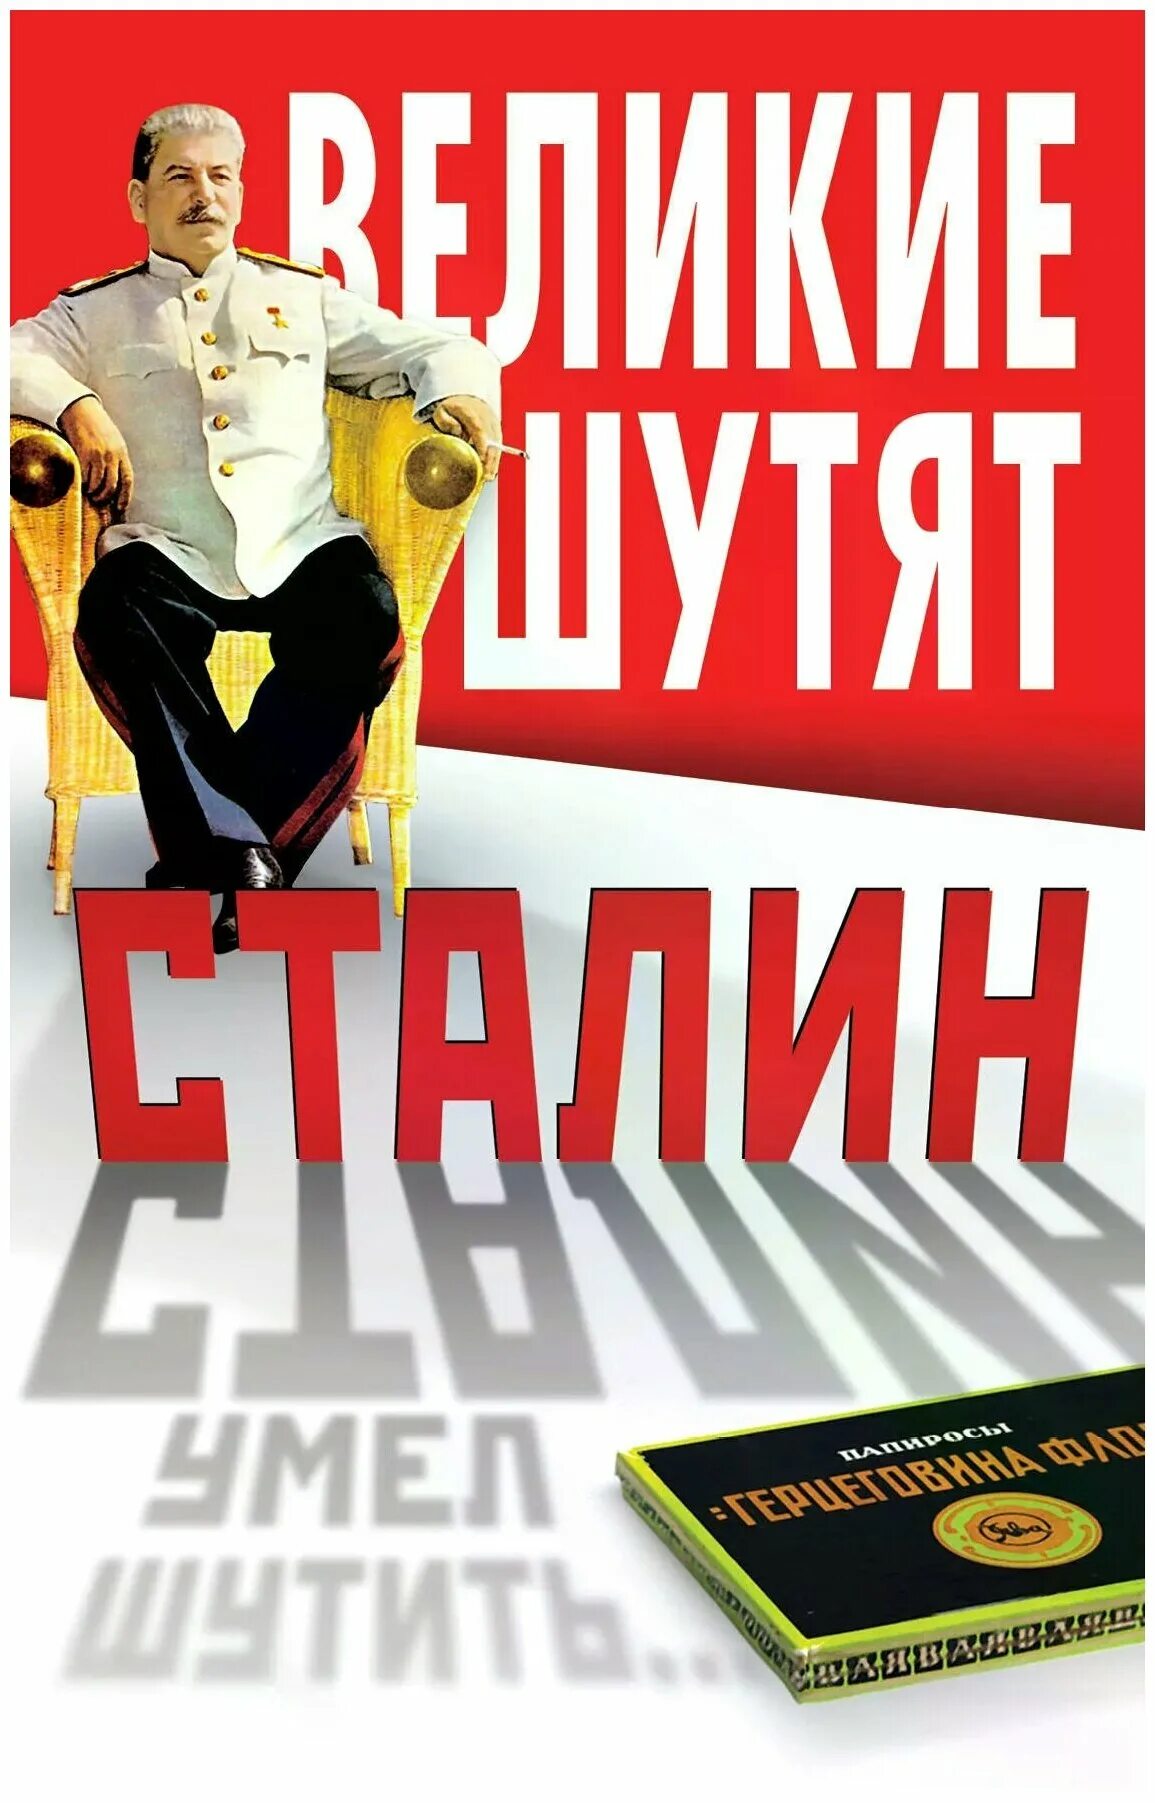 Великие шутят. Сталин шутит книга. Сталин умел шутить…. Сталин шутит книга купить. Книга Великие шутят.